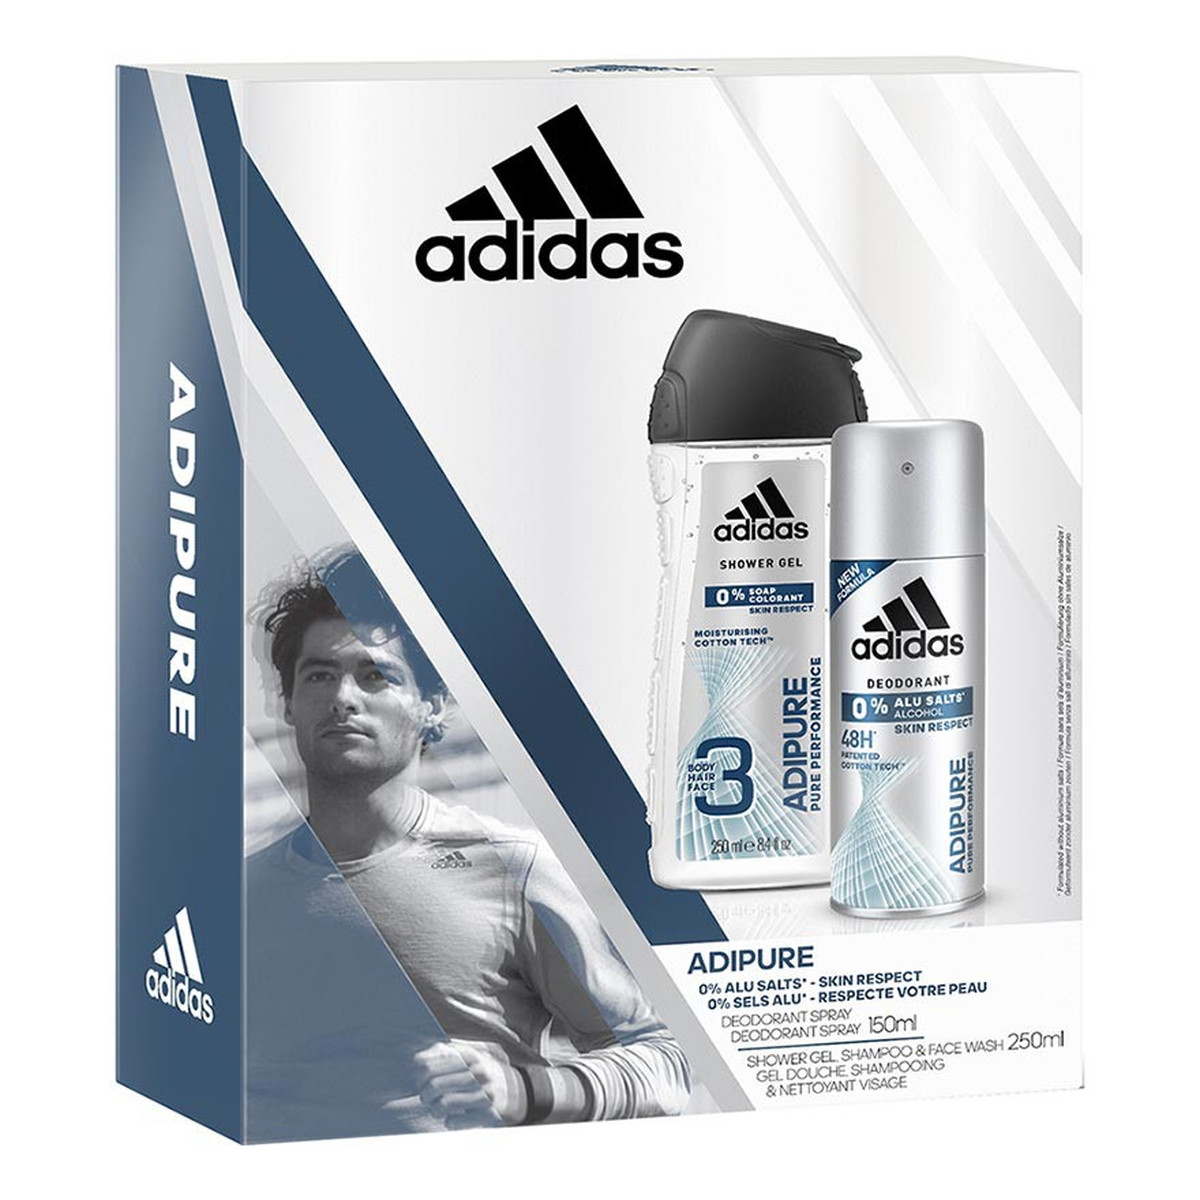 Adidas AdiPure Zestaw prezentowy dla mężczyzn 250ml